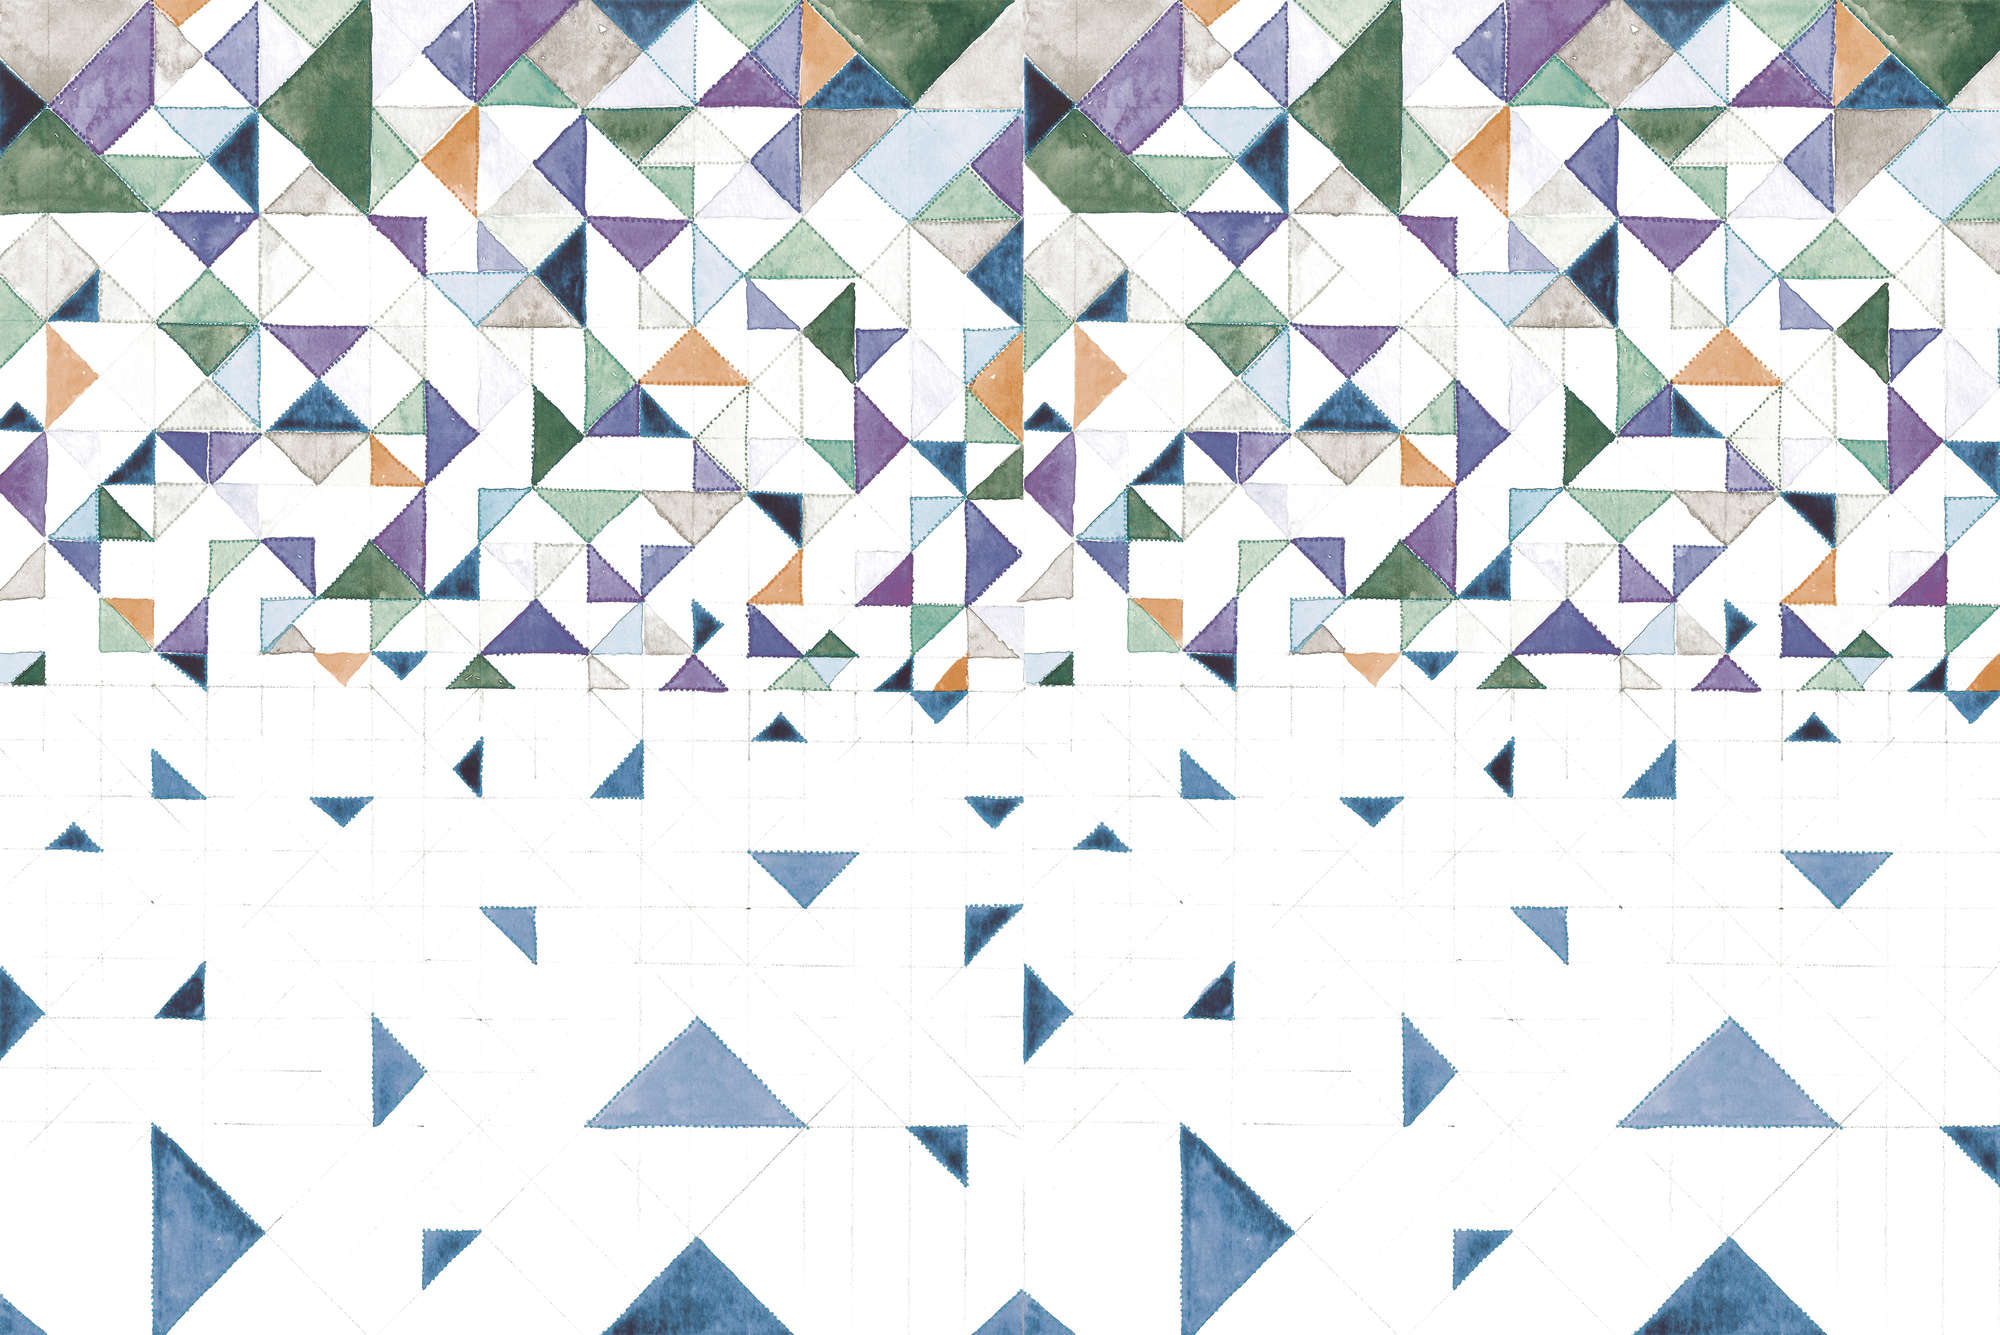             Grafisch behang met driehoekpatroon op mat glad vlies
        